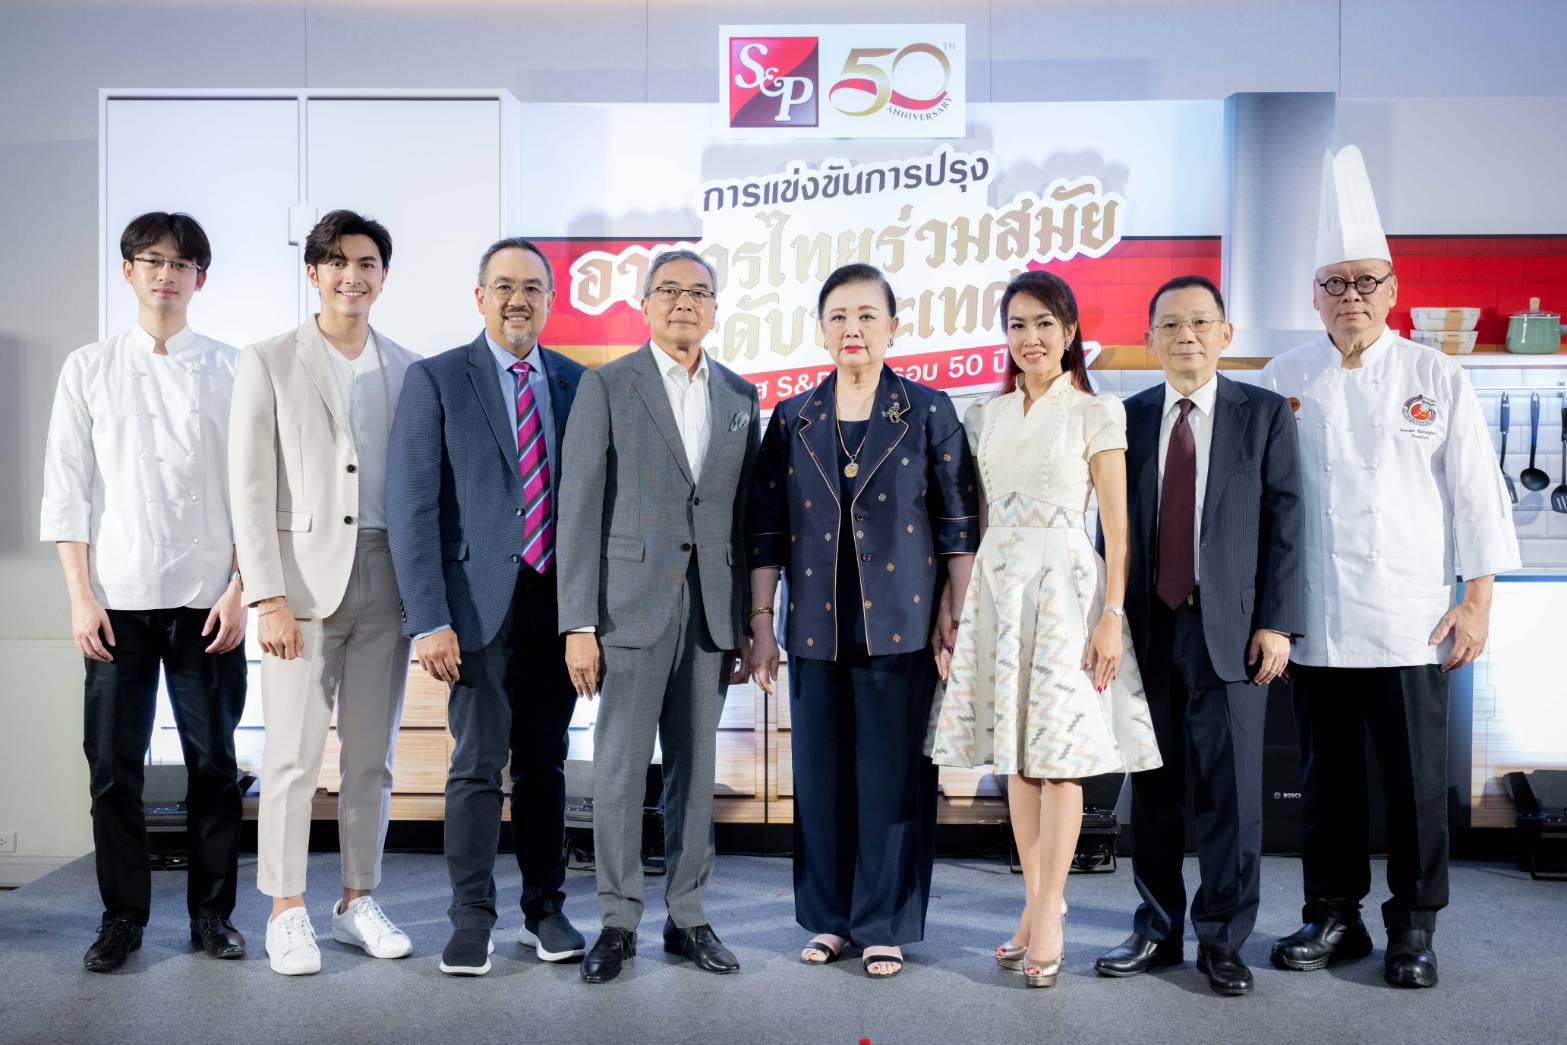 ‘เอส แอนด์ พี’ ผู้นำธุรกิจร้านอาหารไทย จัดงานแถลงข่าว‘การแข่งขันการปรุงอาหารไทยร่วมสมัยระดับประเทศ ในโอกาส S&P ครบรอบ 50 ปี’ เพื่อยกระดับอุตสาหกรรมอาหารไทยสู่ระดับสากล